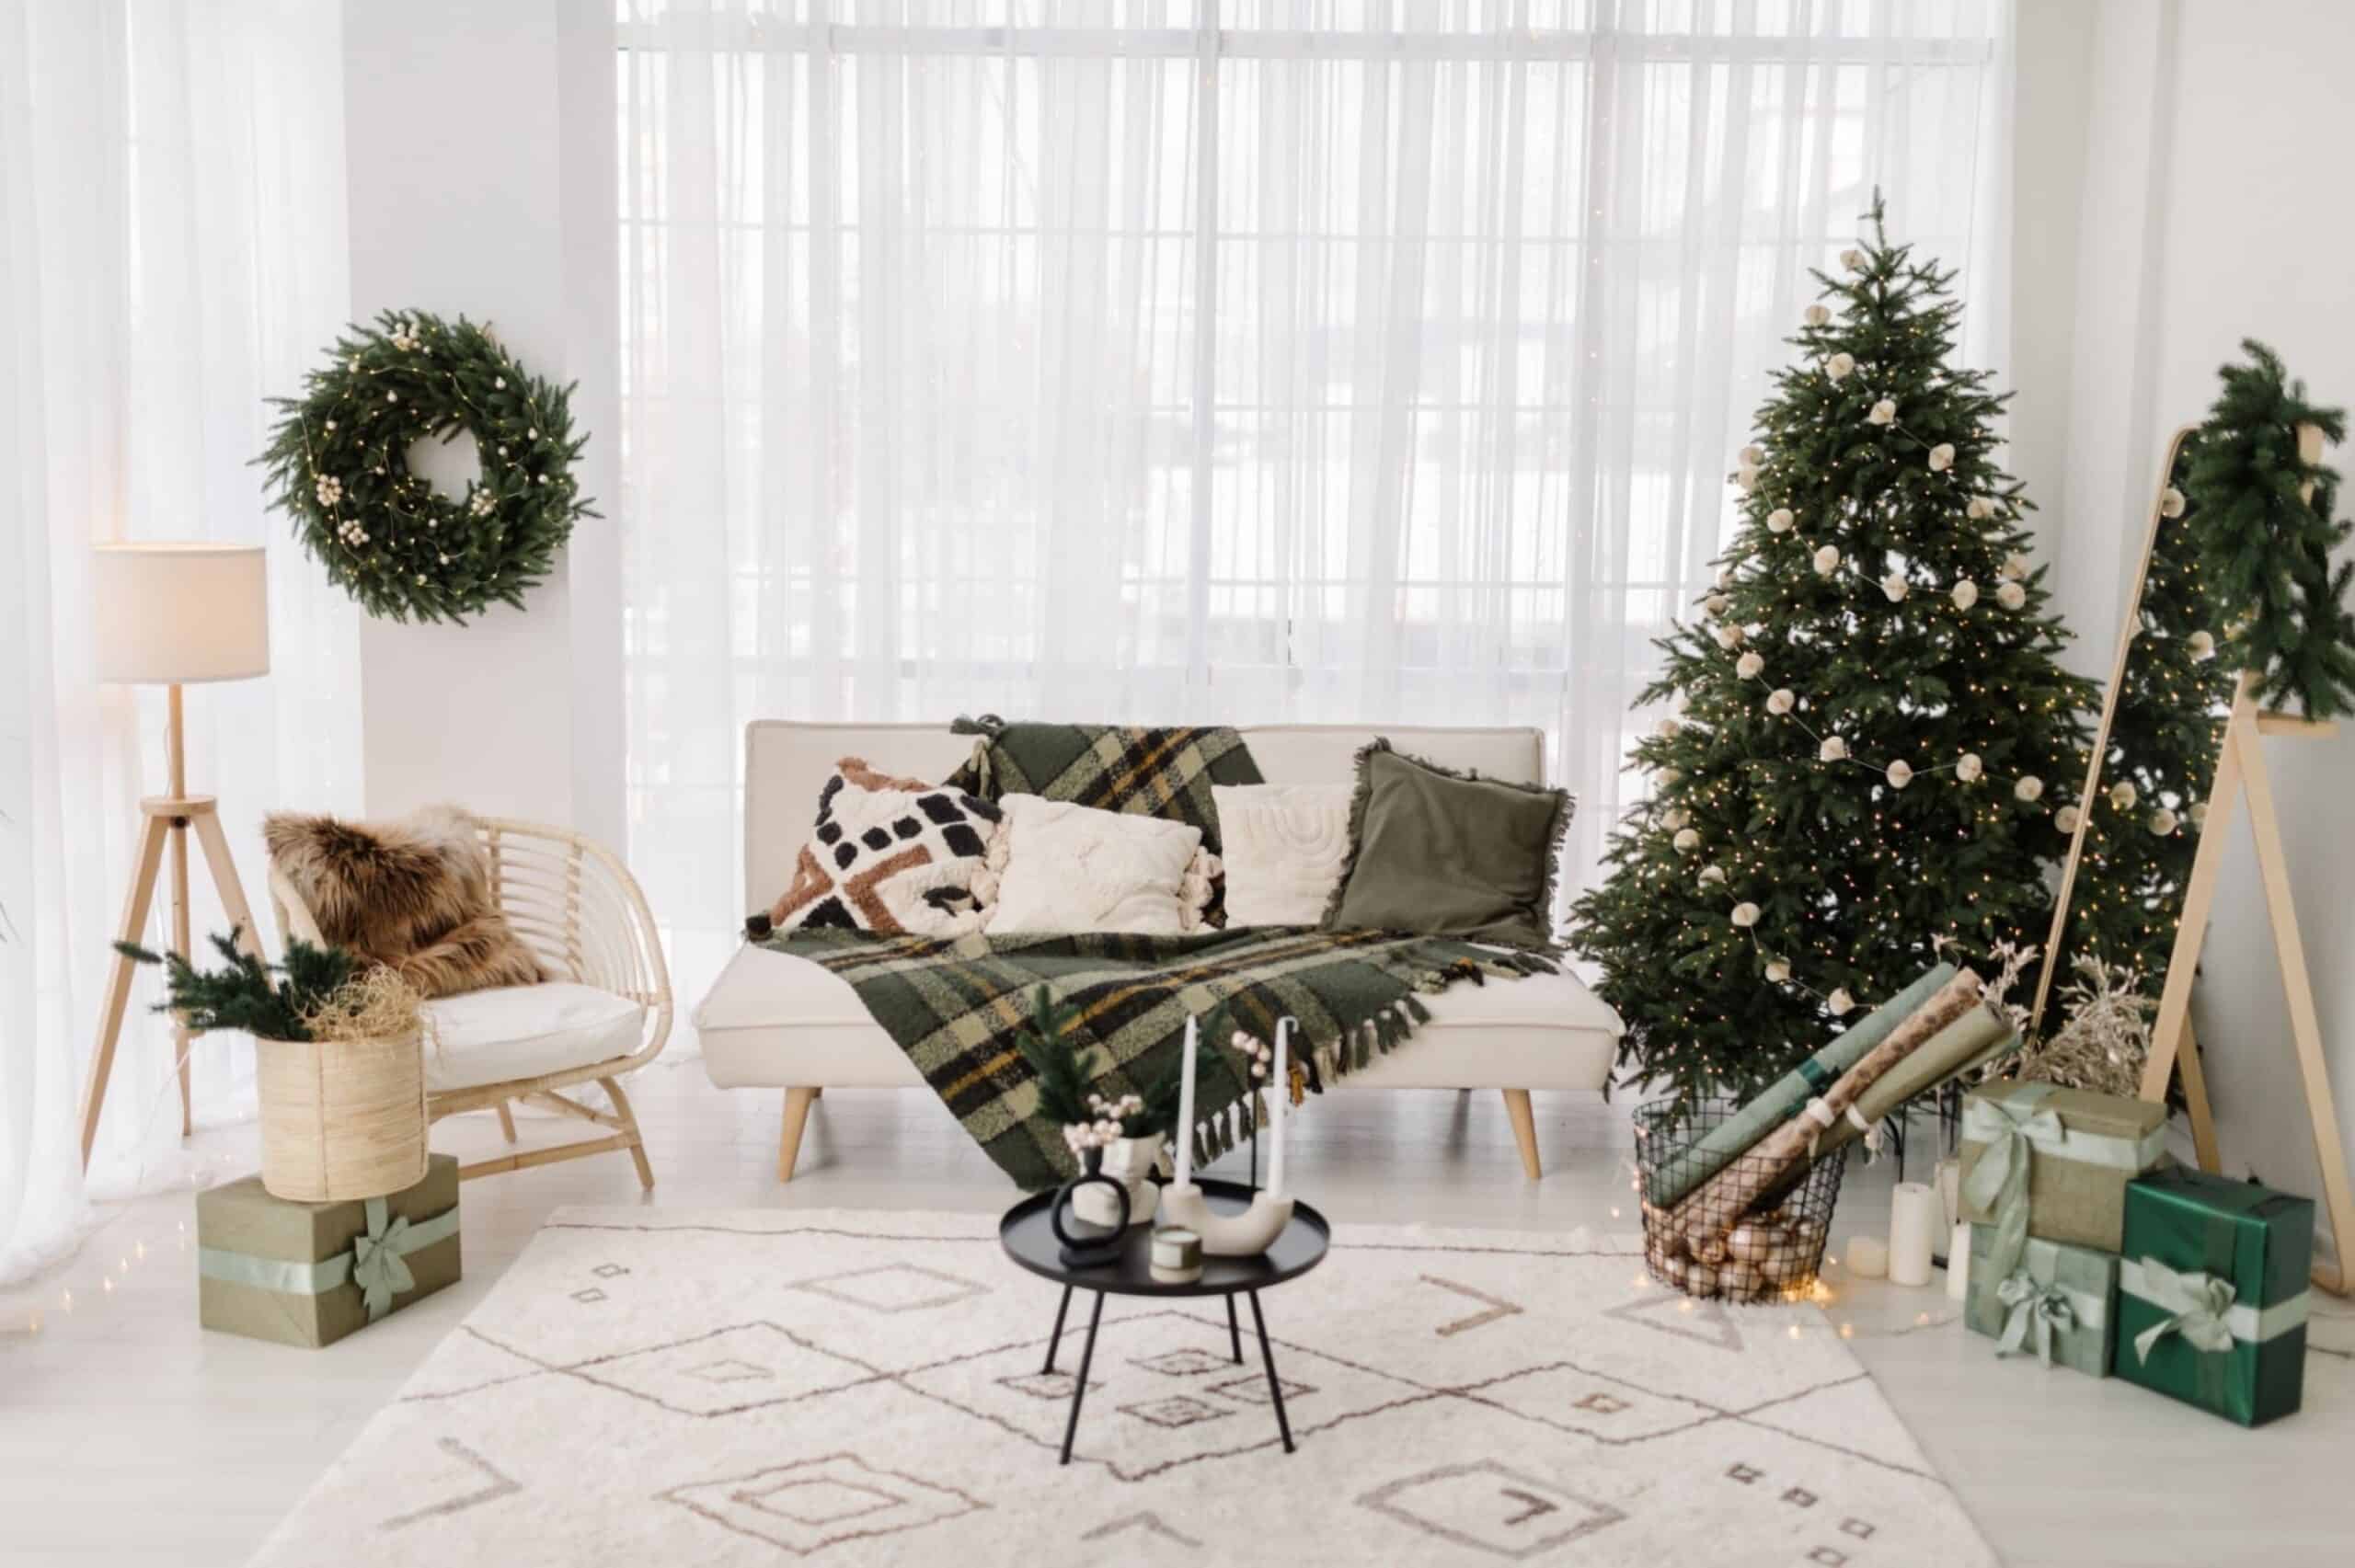 Christmas living room interior with a big Christmas tree